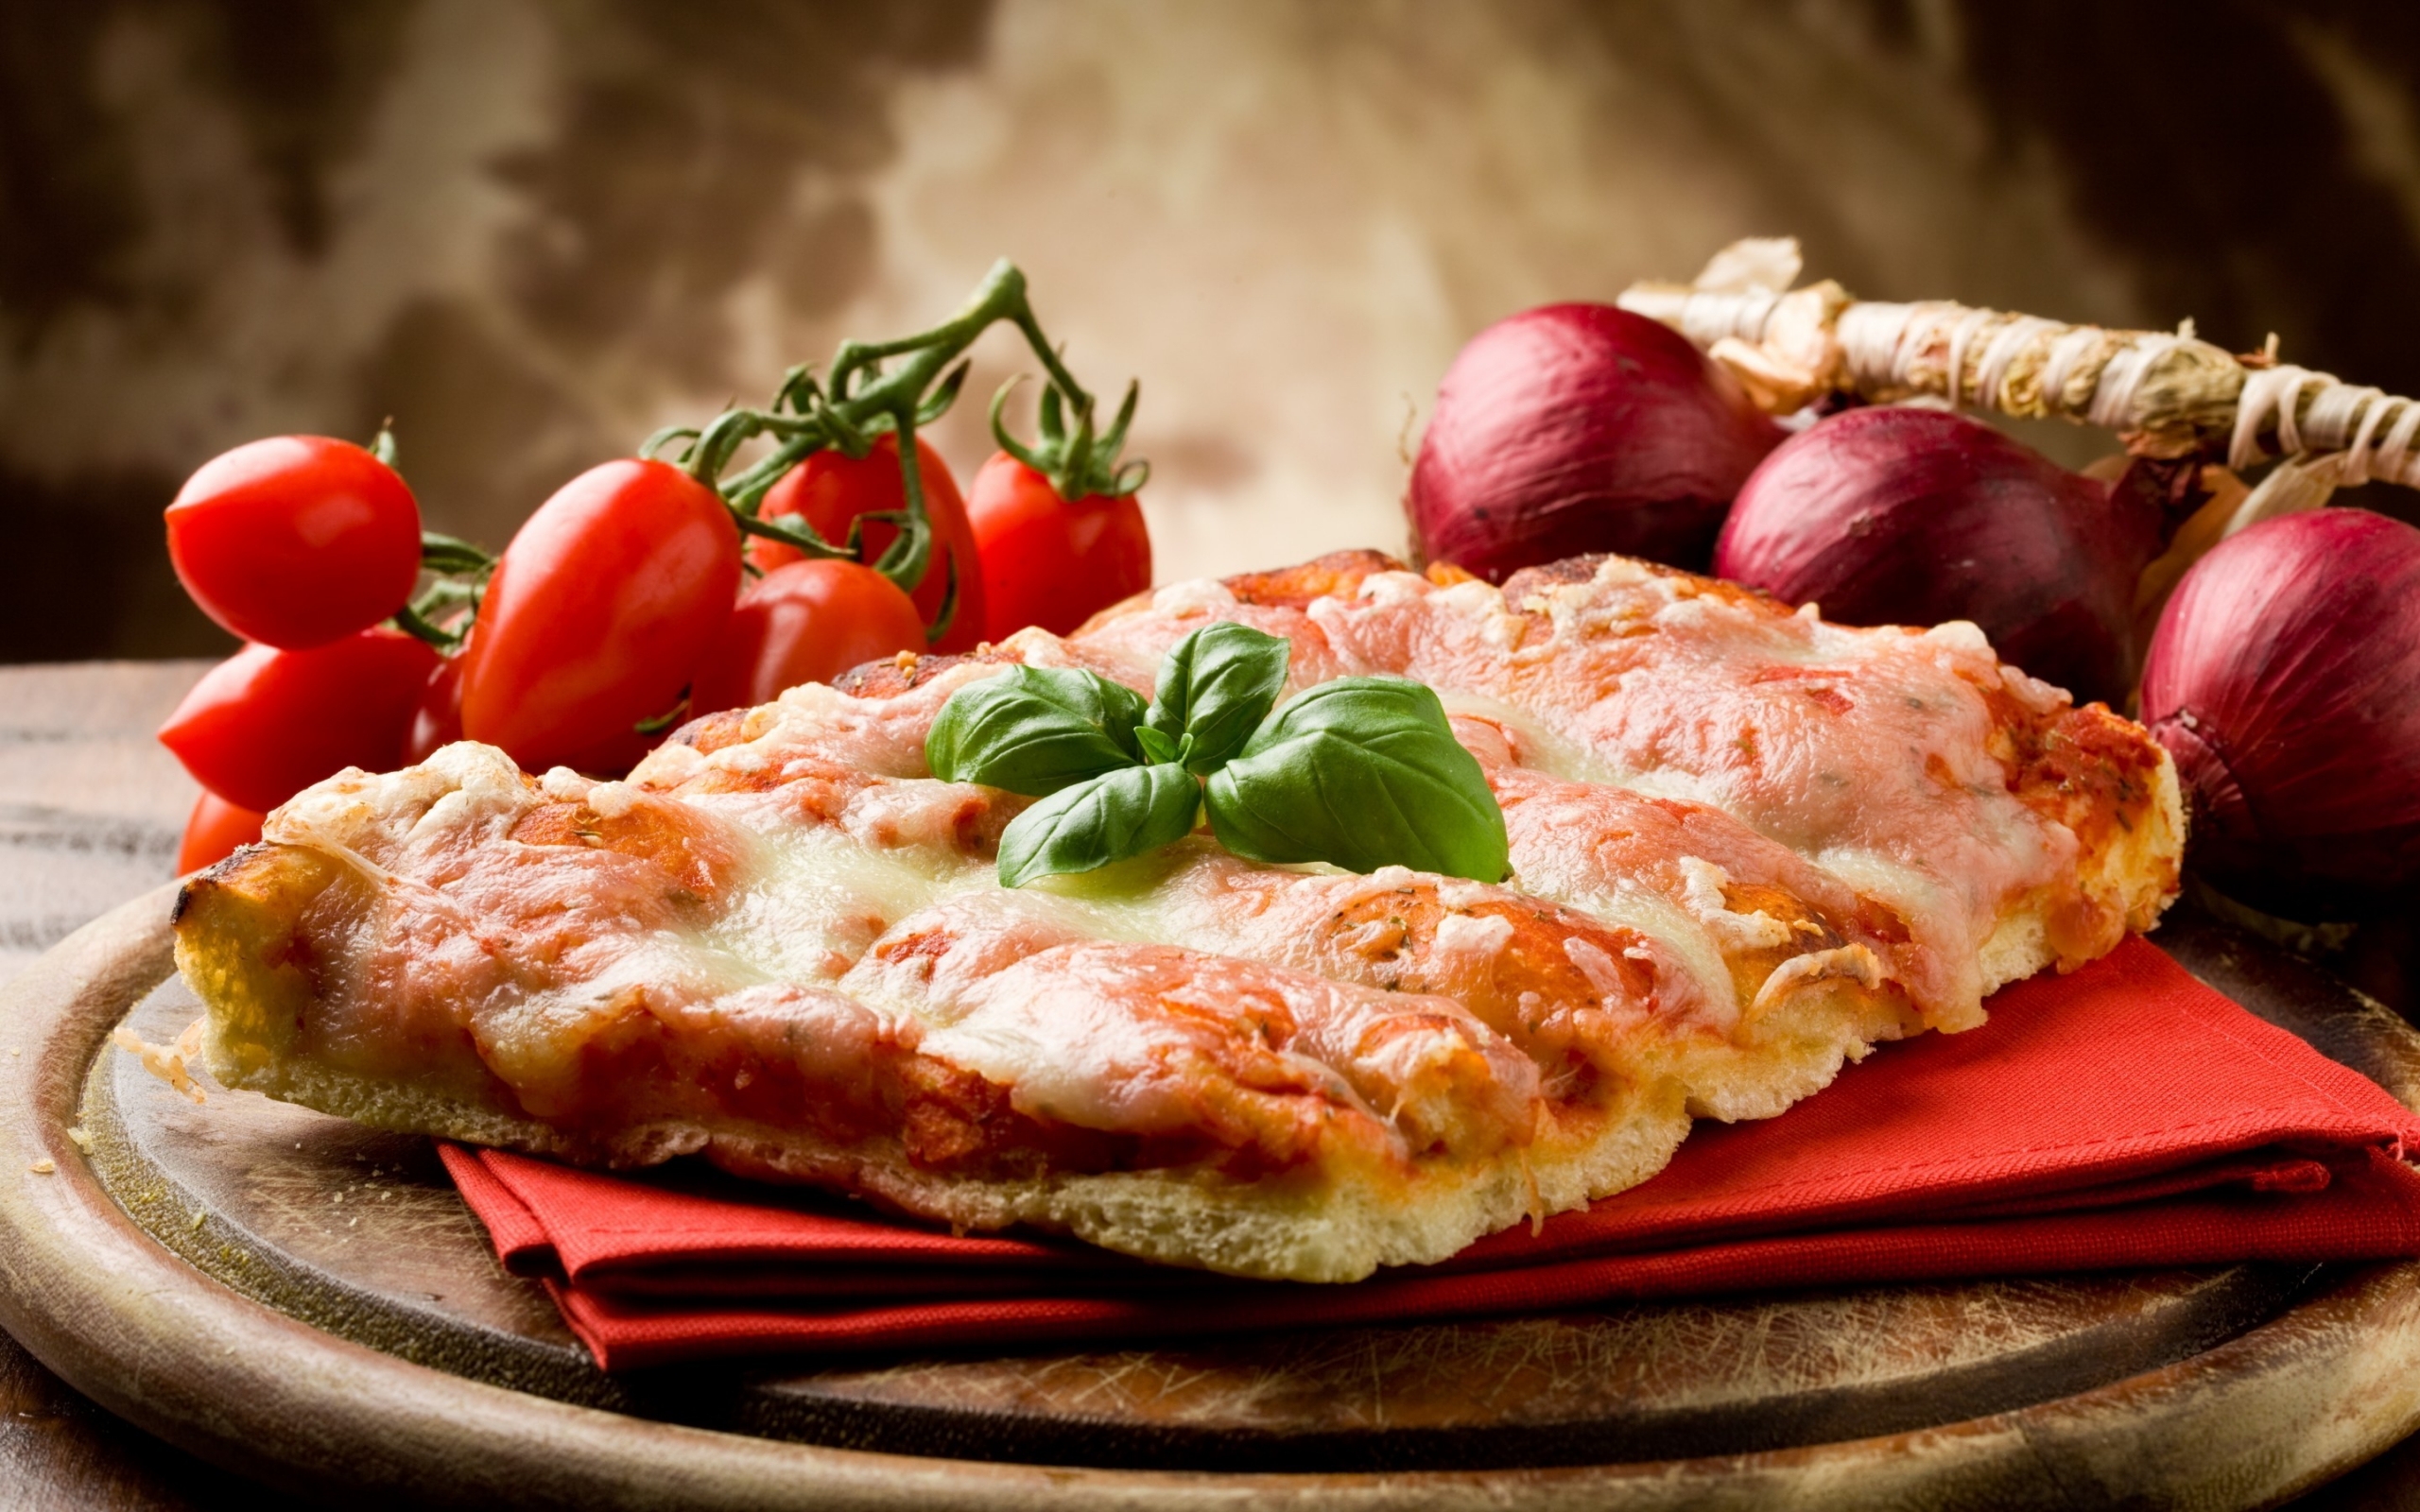 Italian Pizza Slice for 2560 x 1600 widescreen resolution